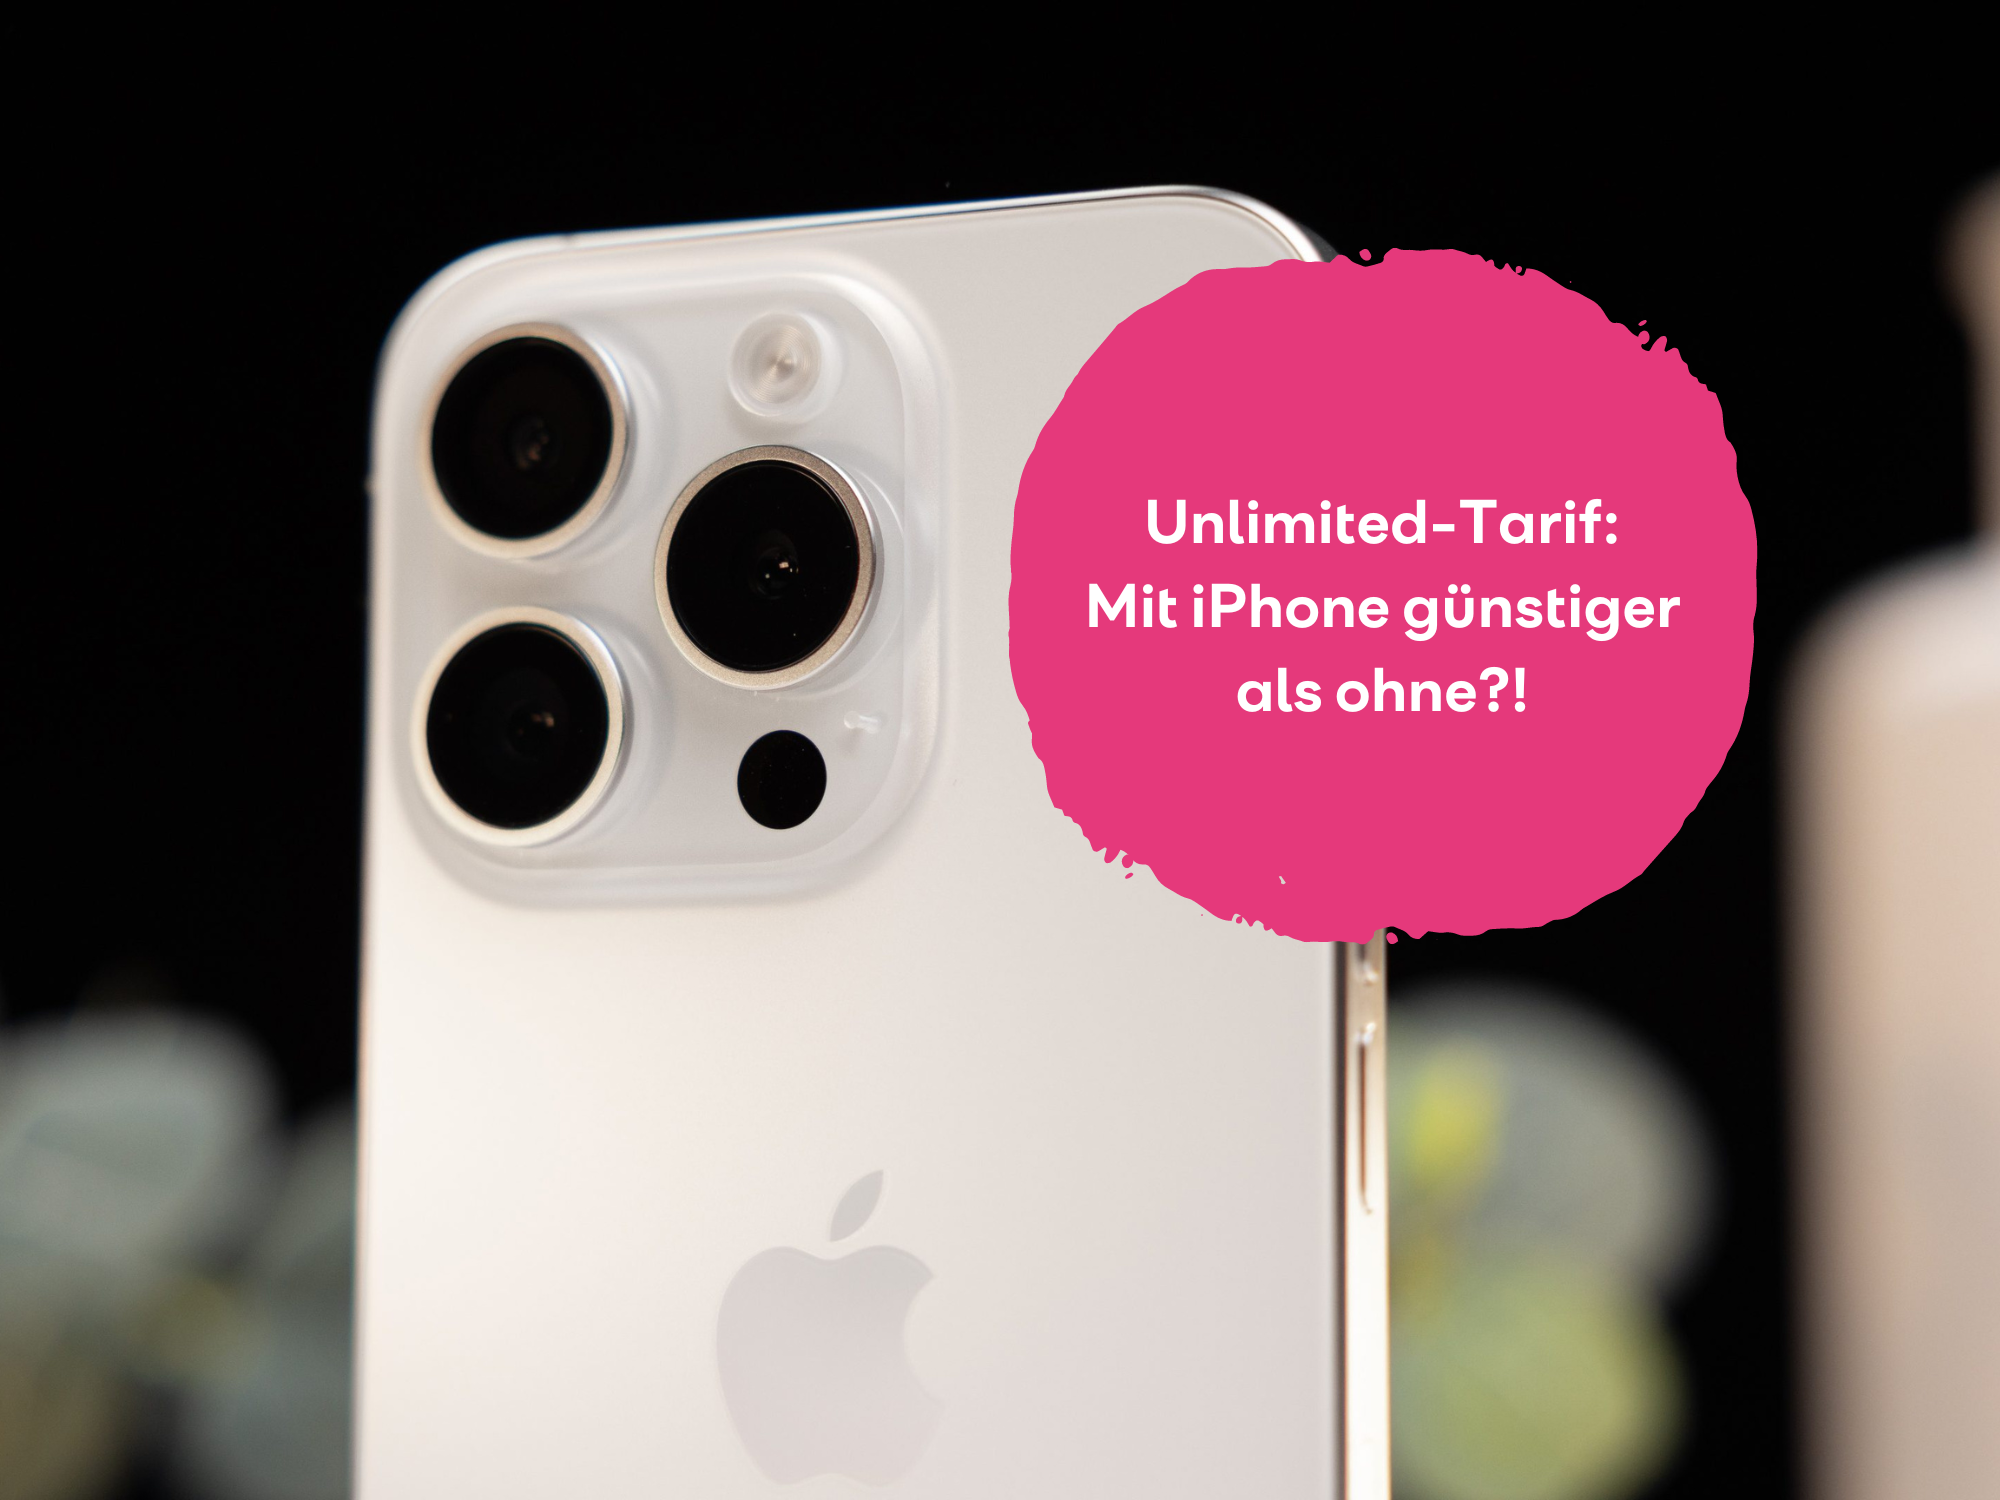 Unlimited-Tarif mit iPhone günstiger als ohne